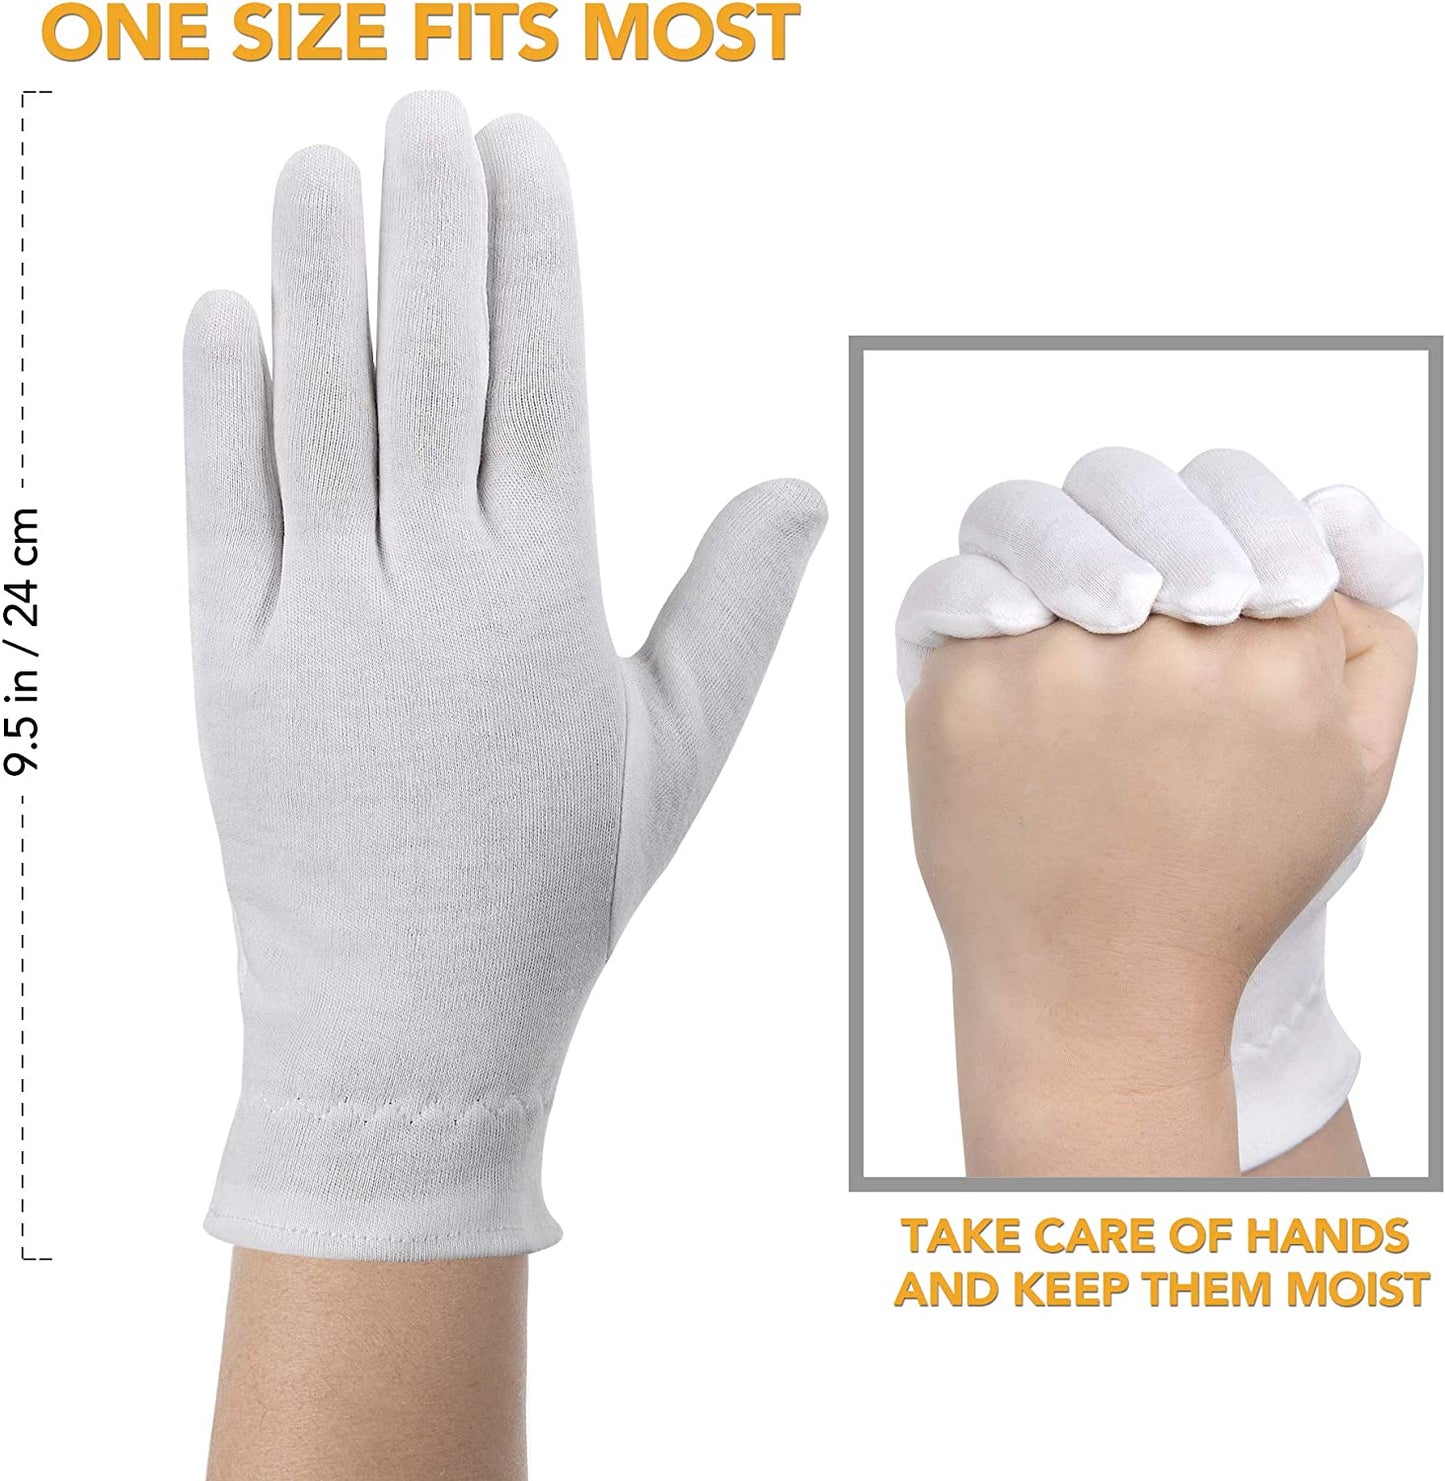 Hand Moisturizing Gloves | Cotton Gloves for Dry Hands | Akrilane